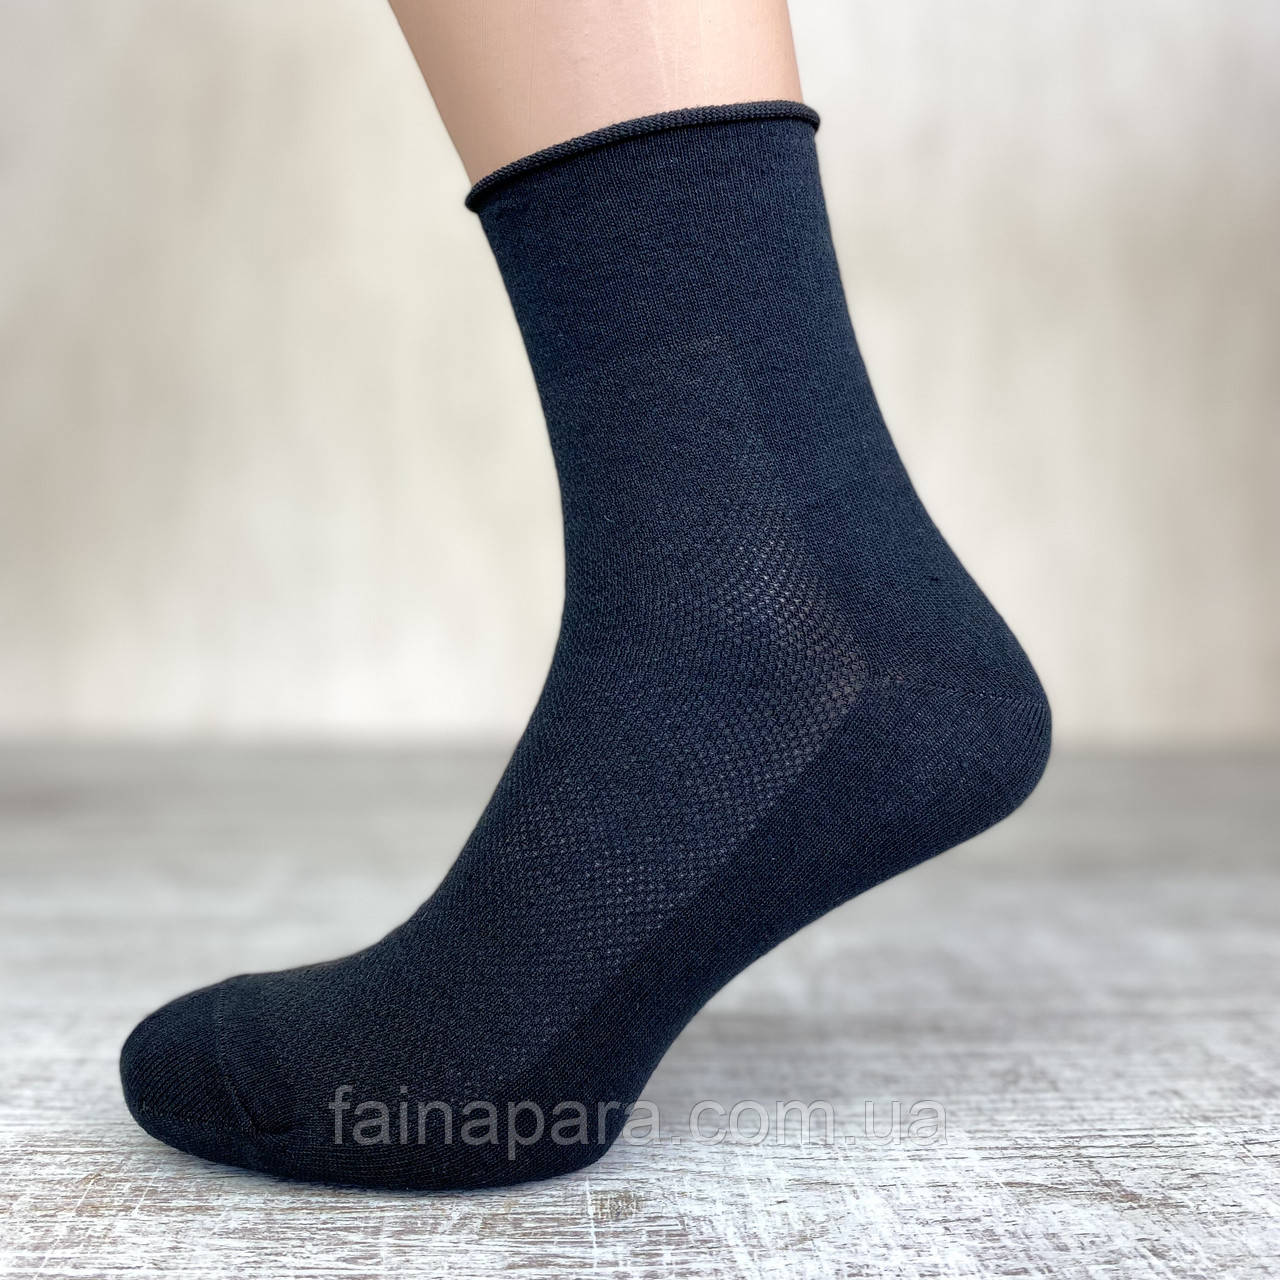 Чоловічі медичні шкарпетки сітка без резинки (чорний) 27-29